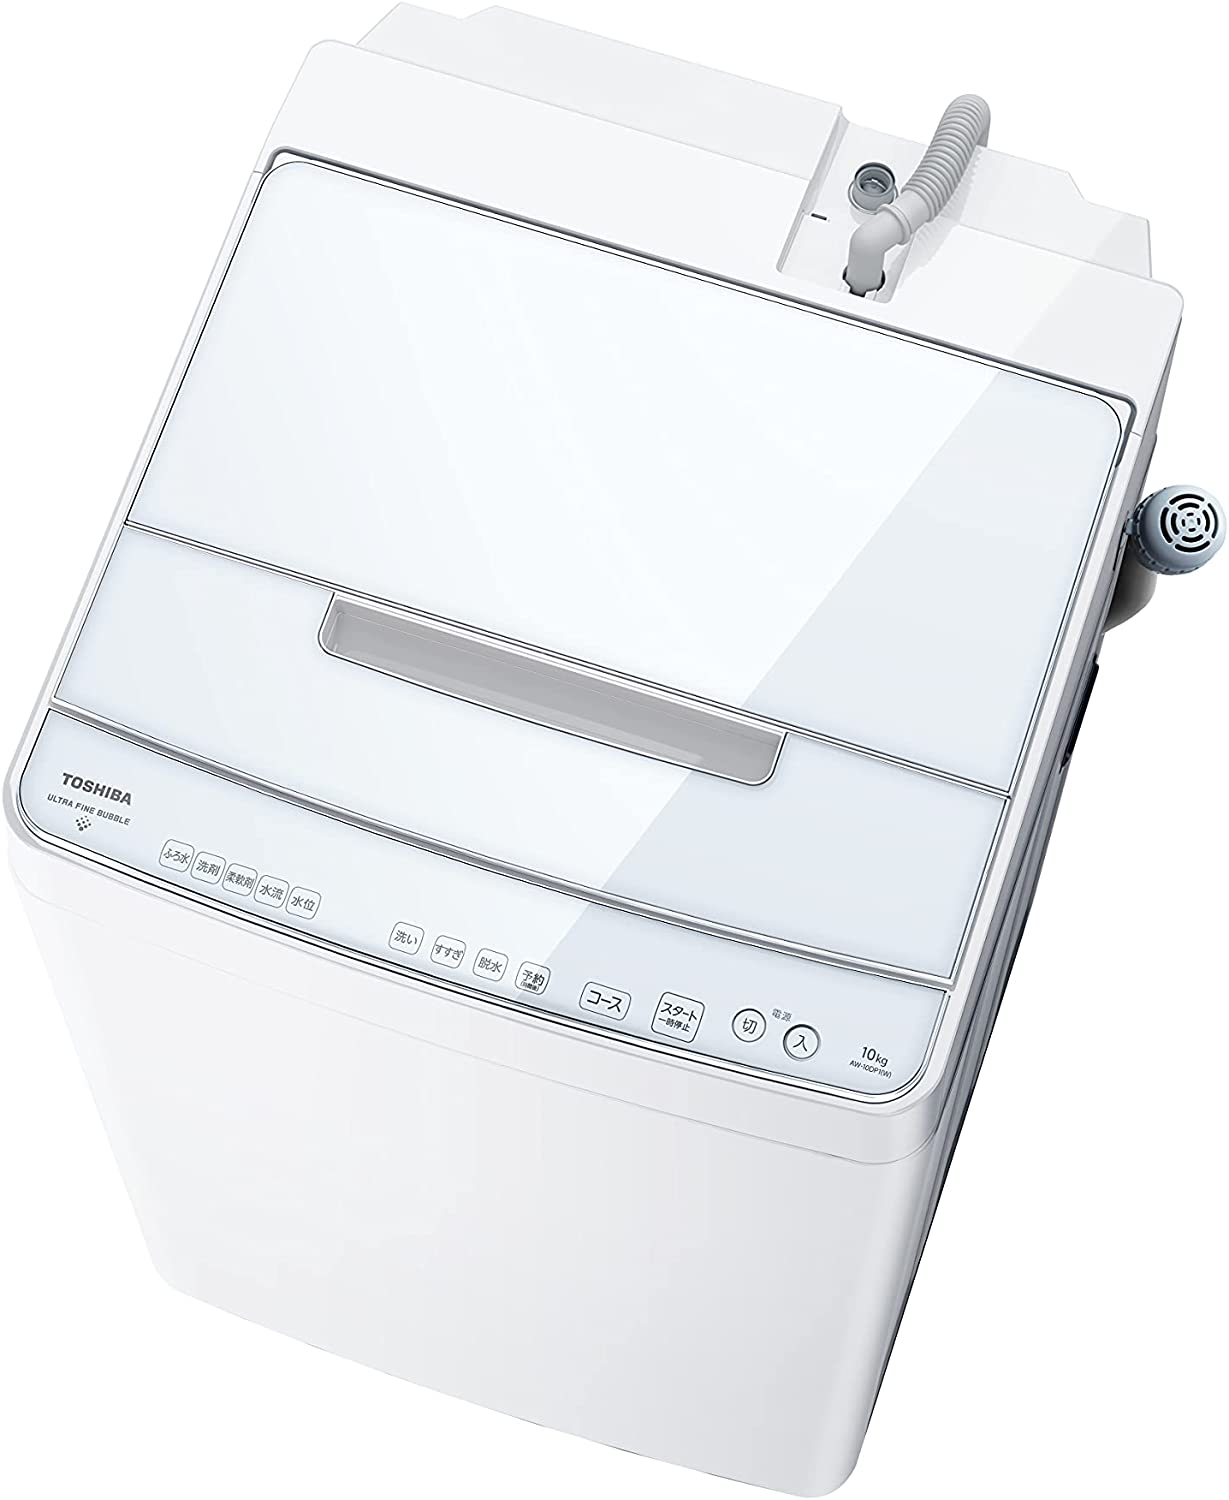 東芝 全自動洗濯機 10kg グランホワイト AW-10DP1 (W) 